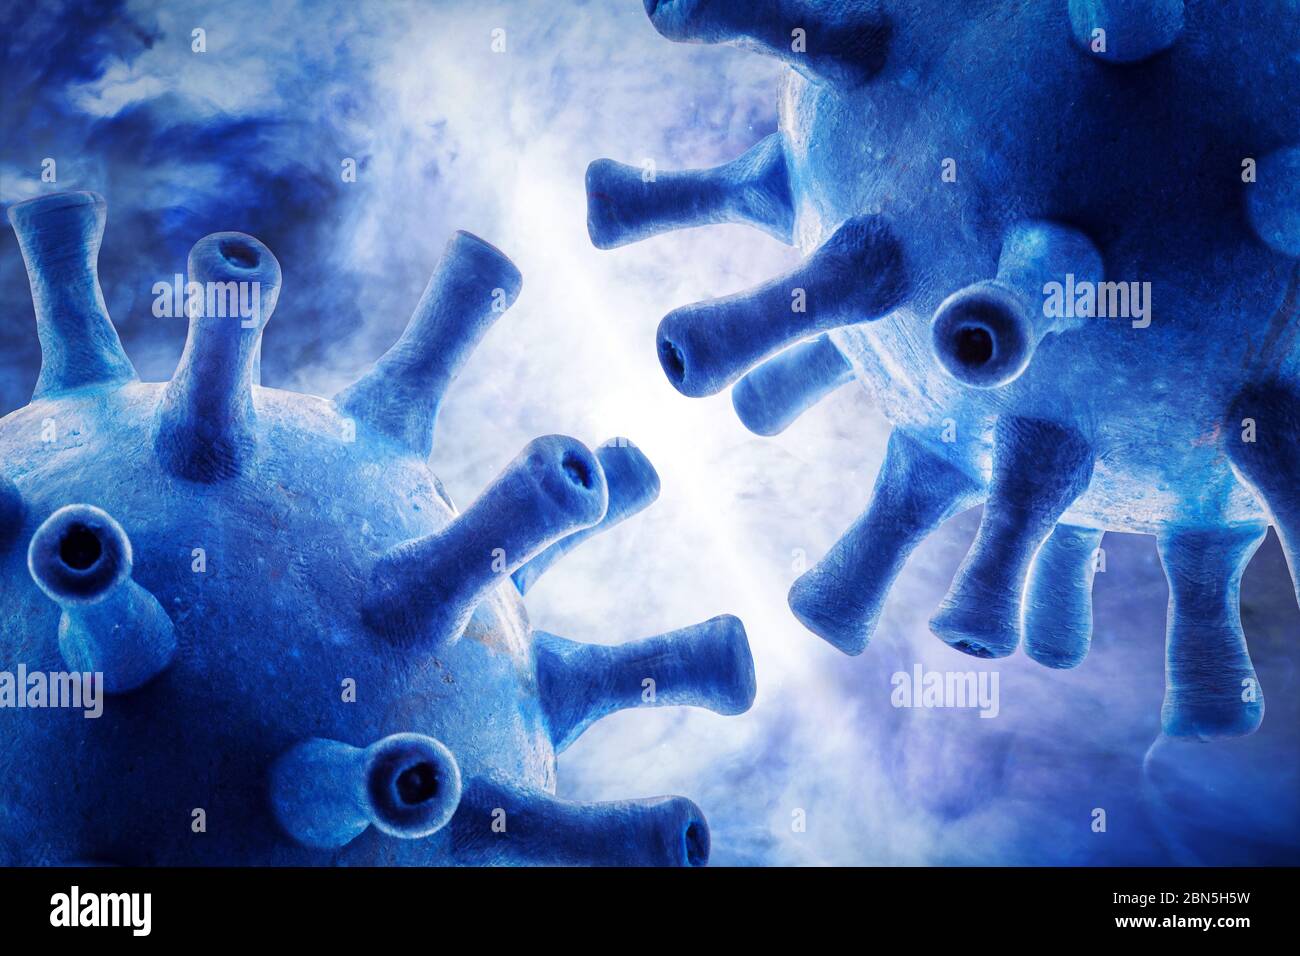 Coronavirus ou germes de la grippe sur fond bleu, illustration 3d, vue macro du virus corona du SRAS-COV-2 à l'intérieur de la cellule. Concept de technologie scientifique, COVID- Banque D'Images